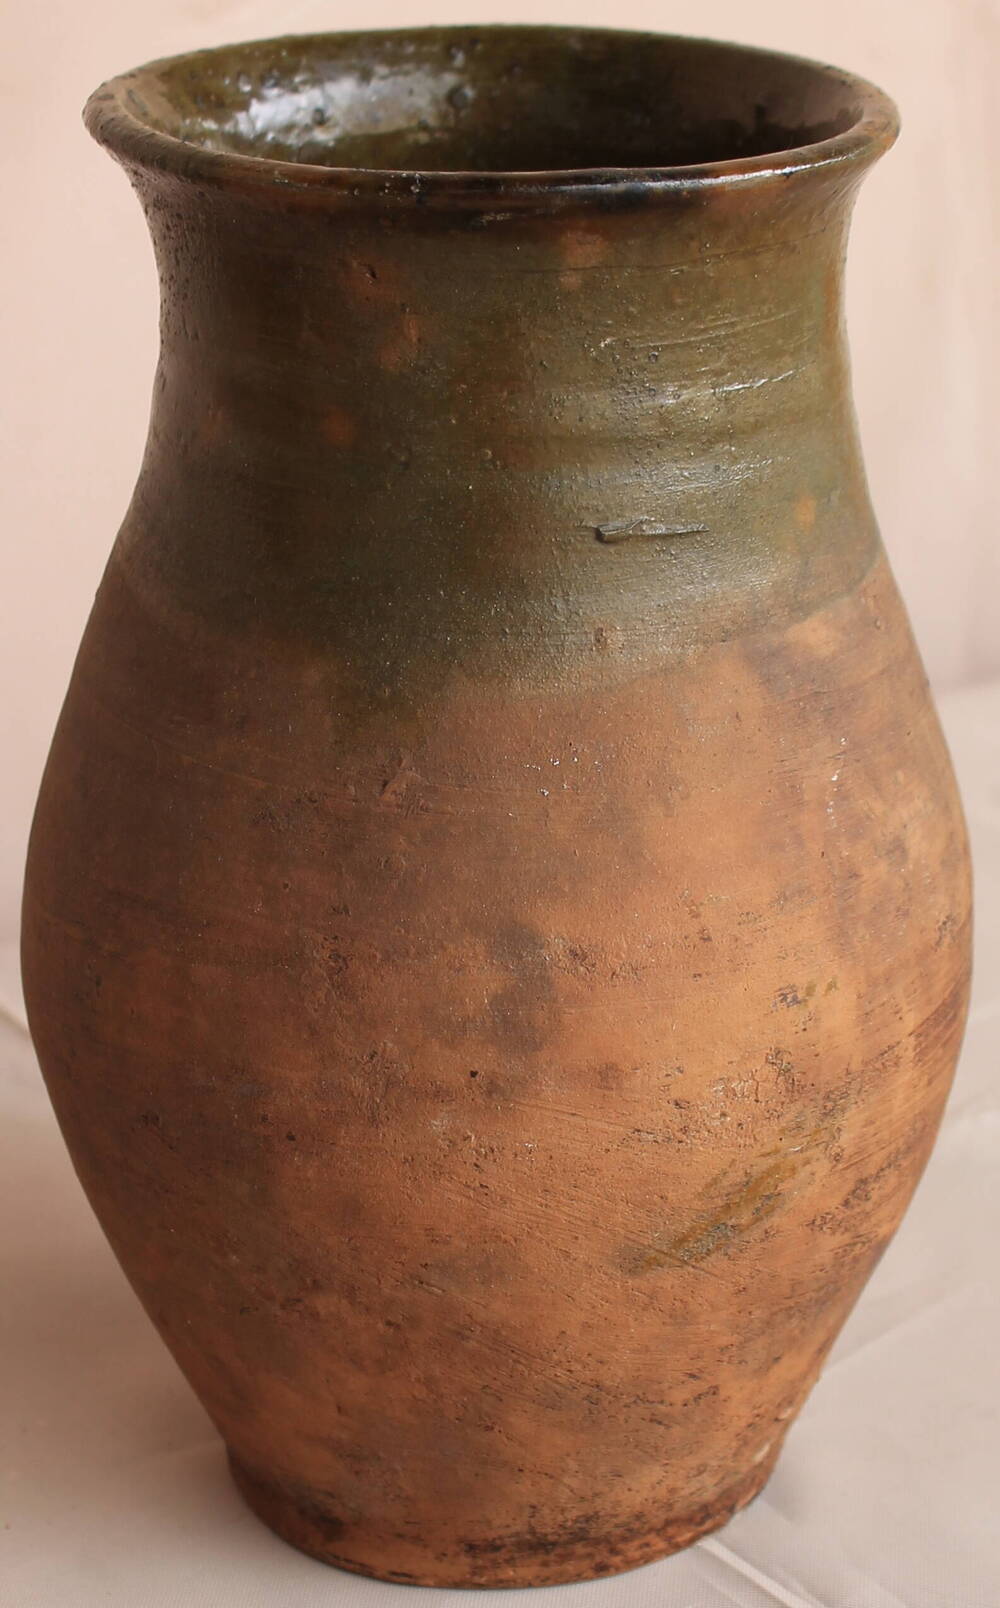 Корчажка
глиняный сосуд для молока, применялась большей частью в деревенском обиходе.